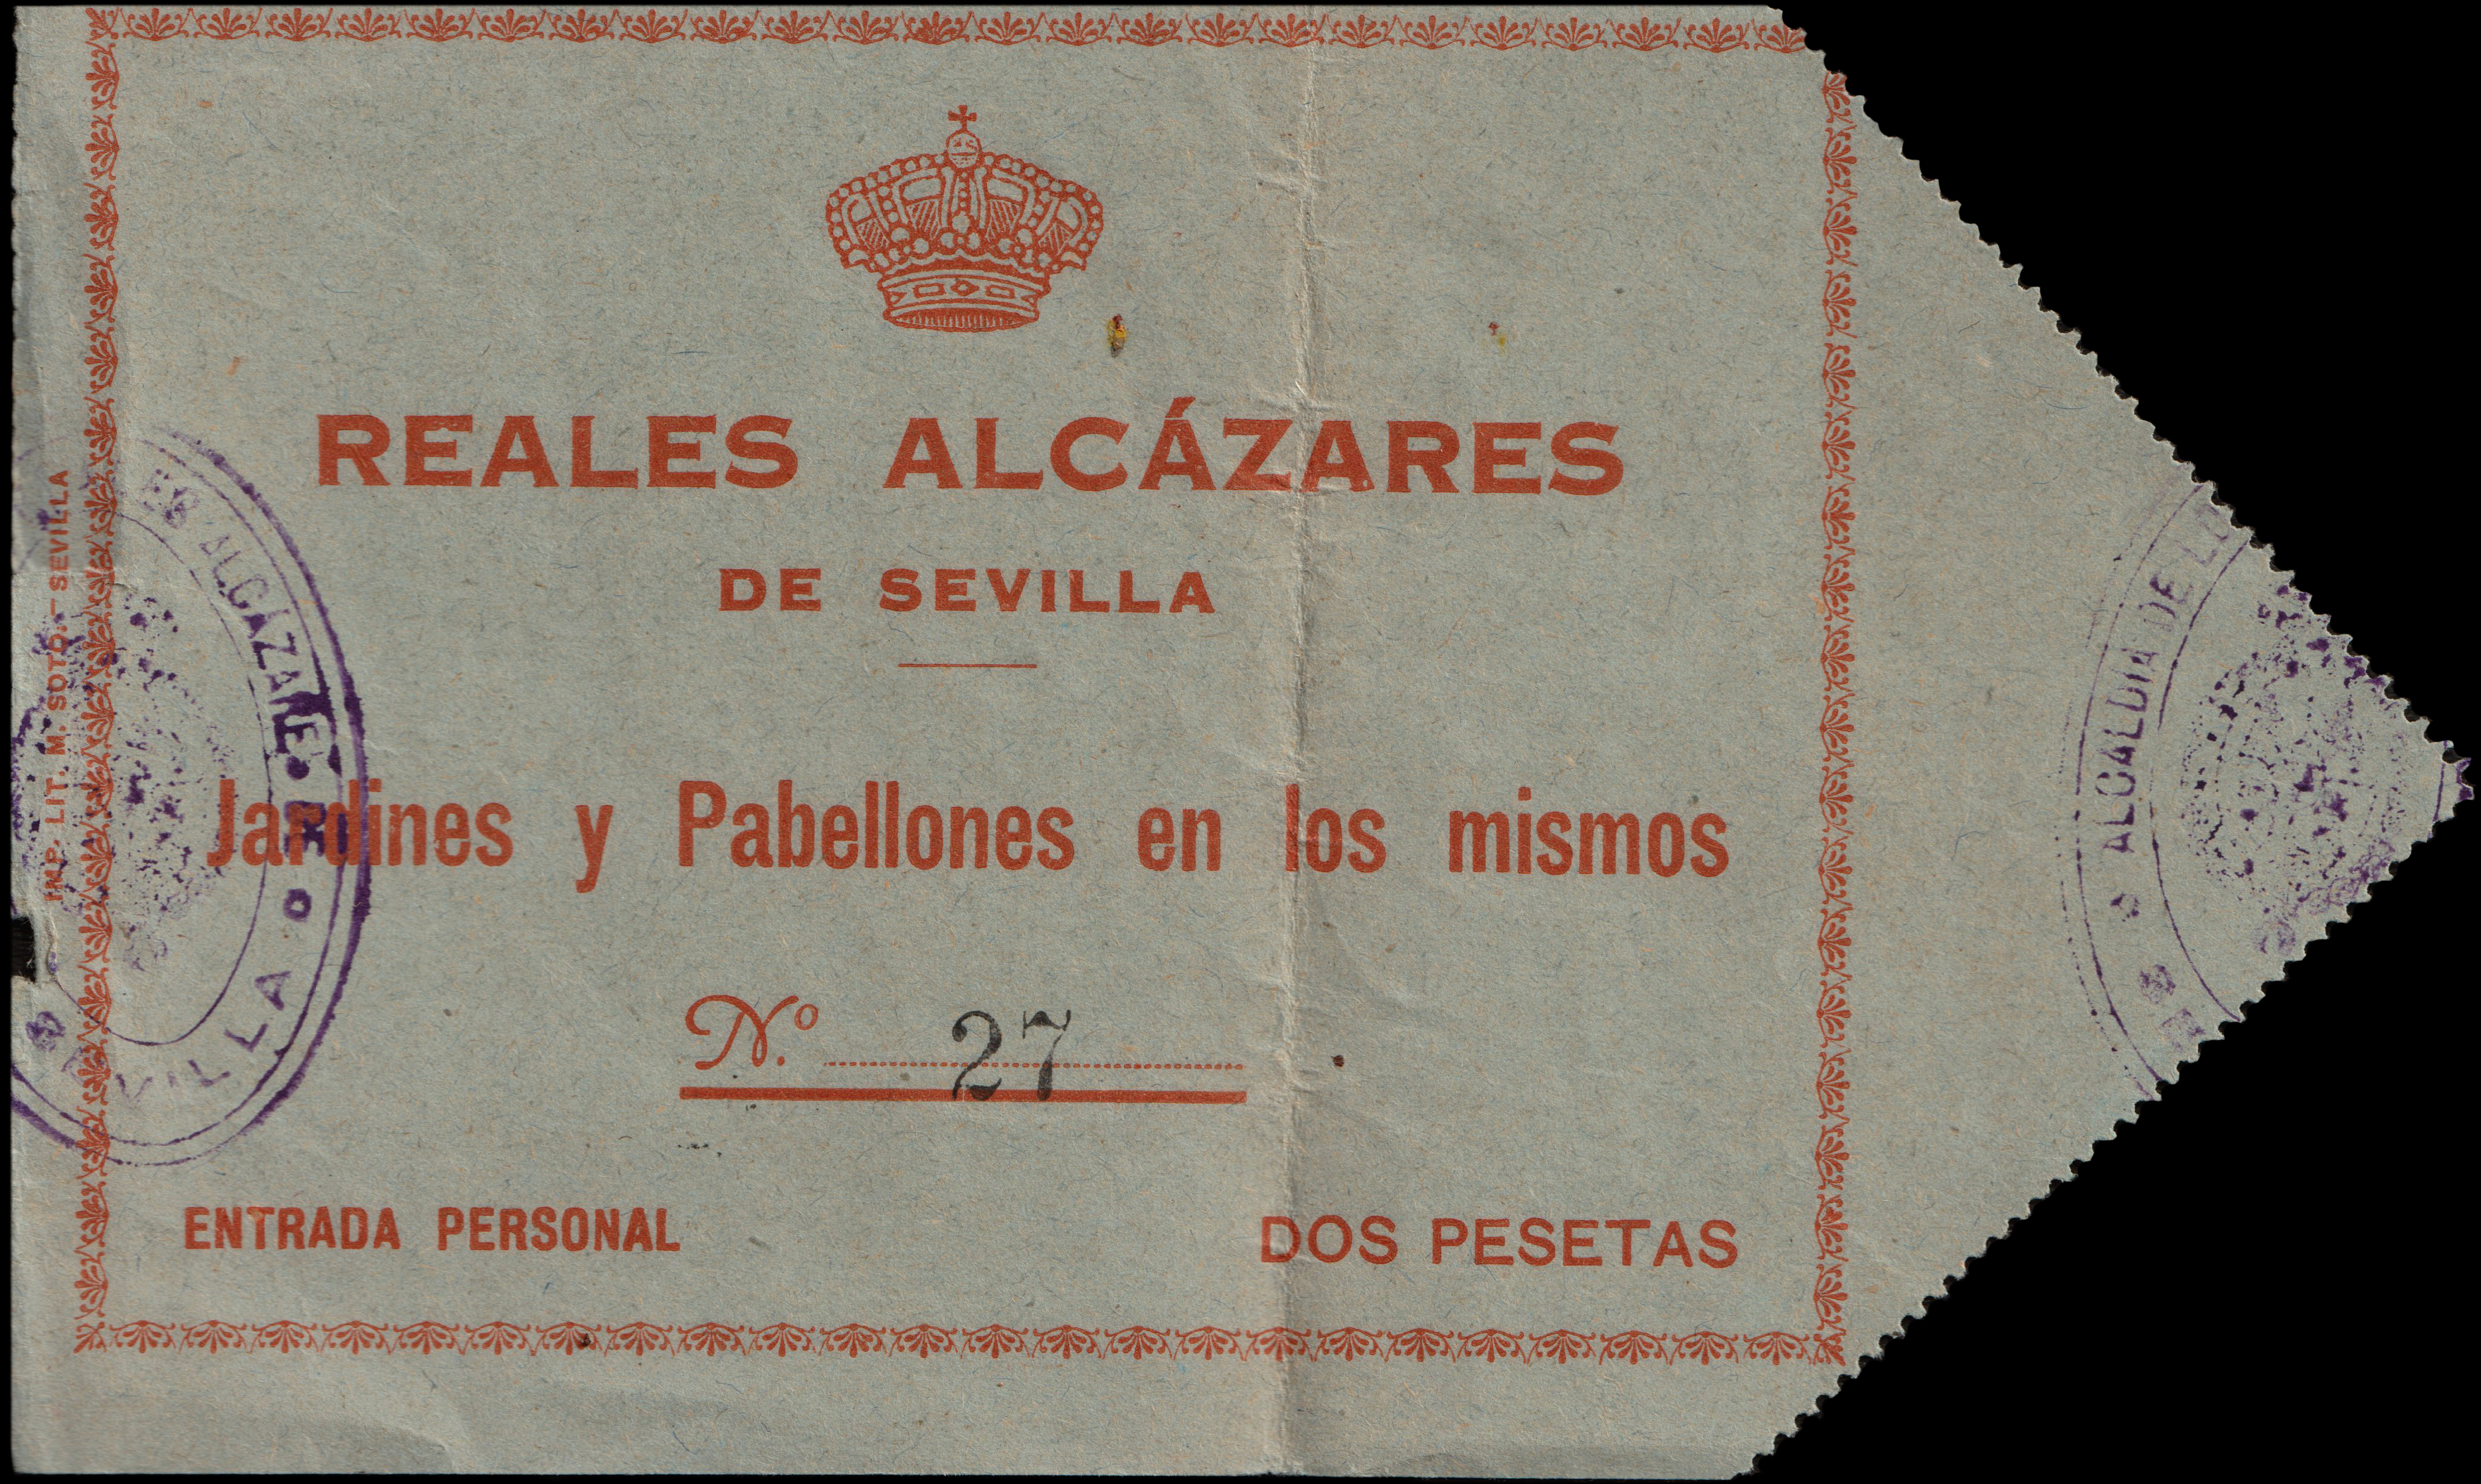 Reales Alcazares de Sevilla